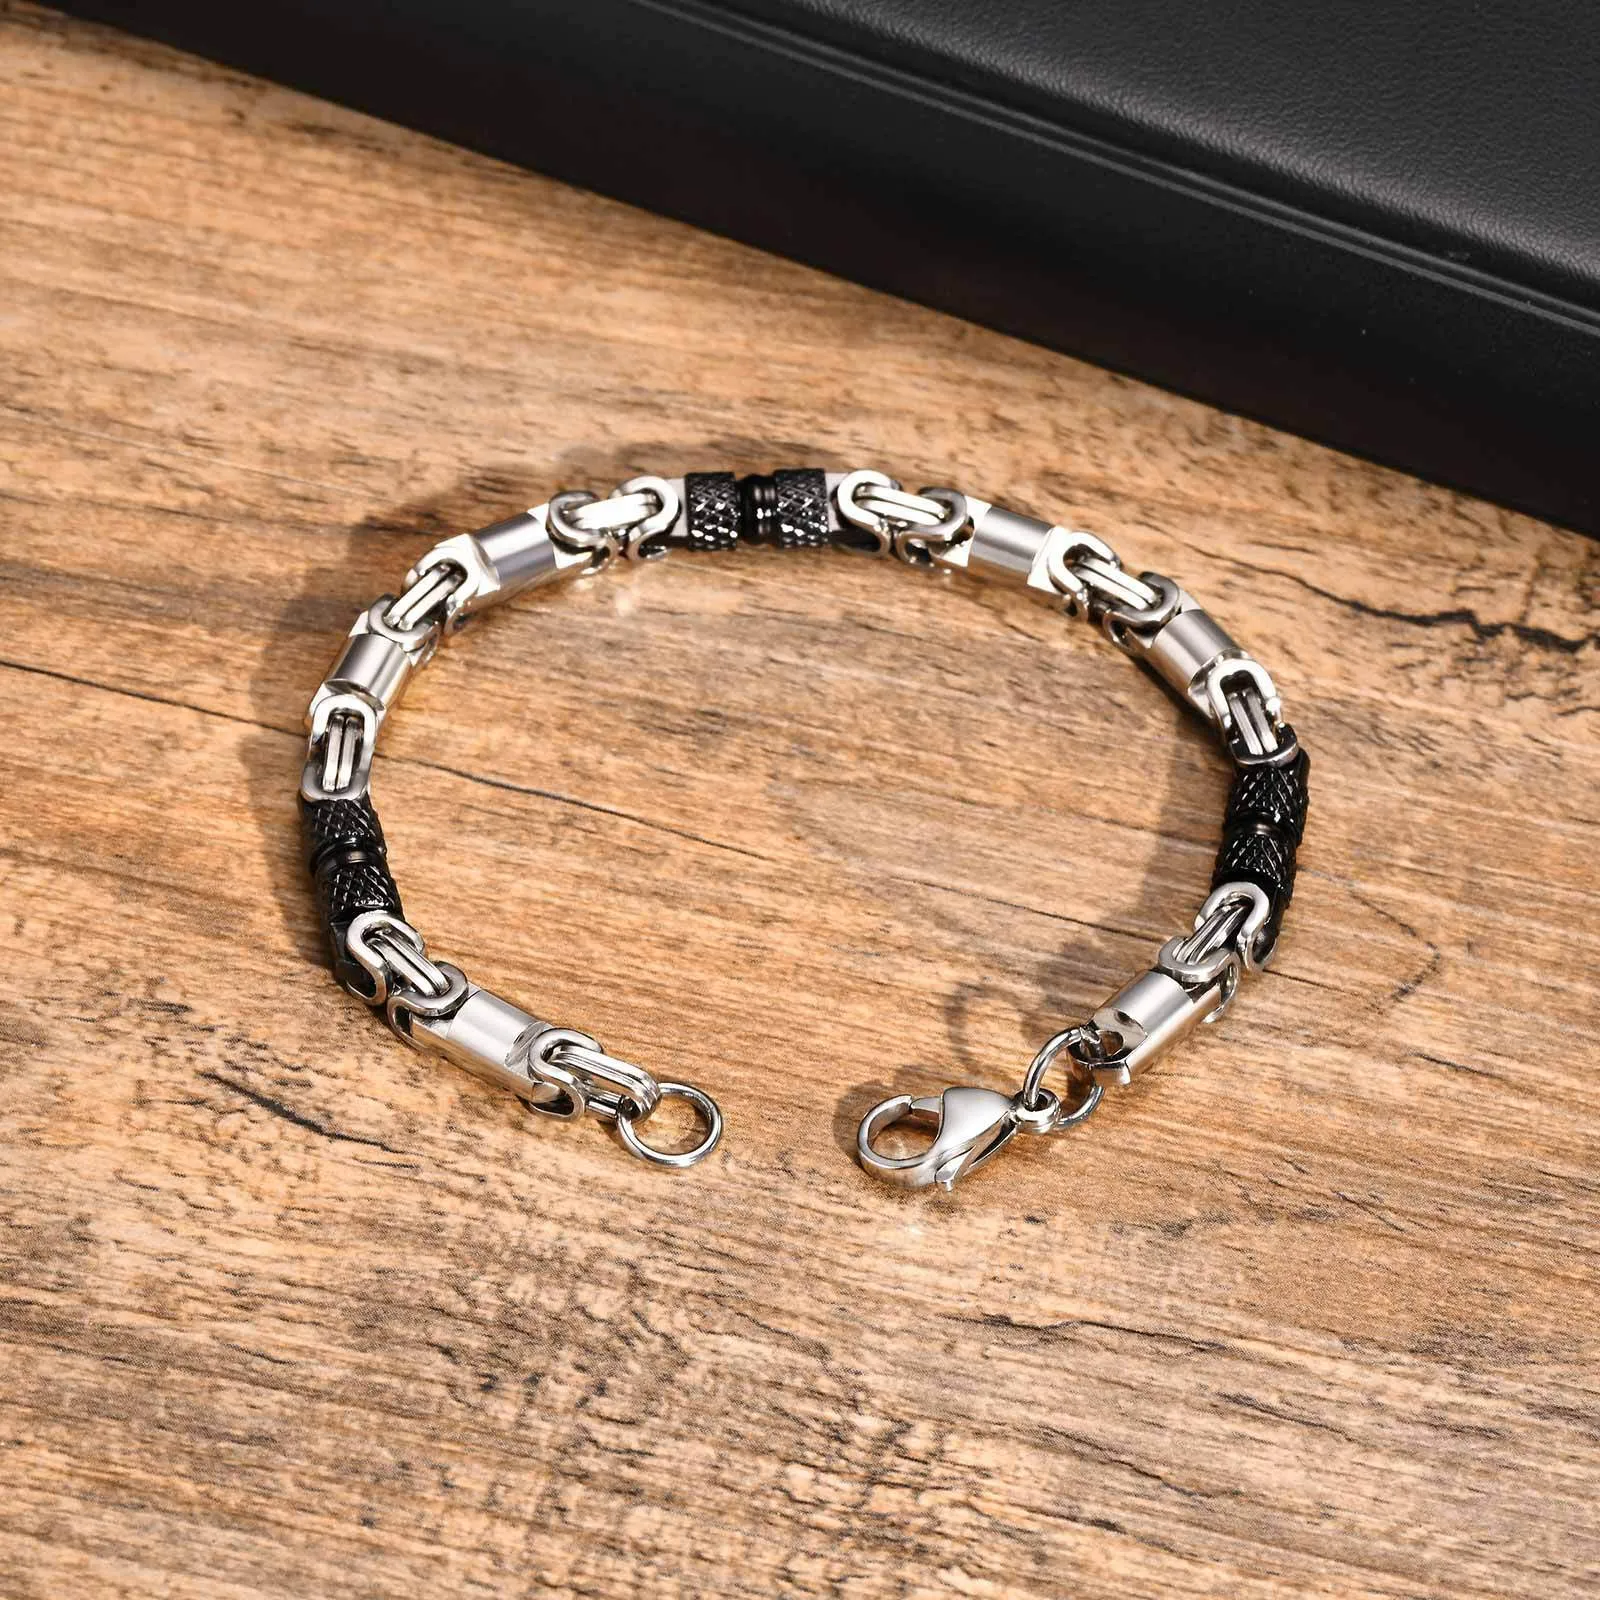 Bracelet de chaîne byzantine en acier inoxydable pour hommes pour hommes garçons 6 mm 8 pouces argent noir BR-1851